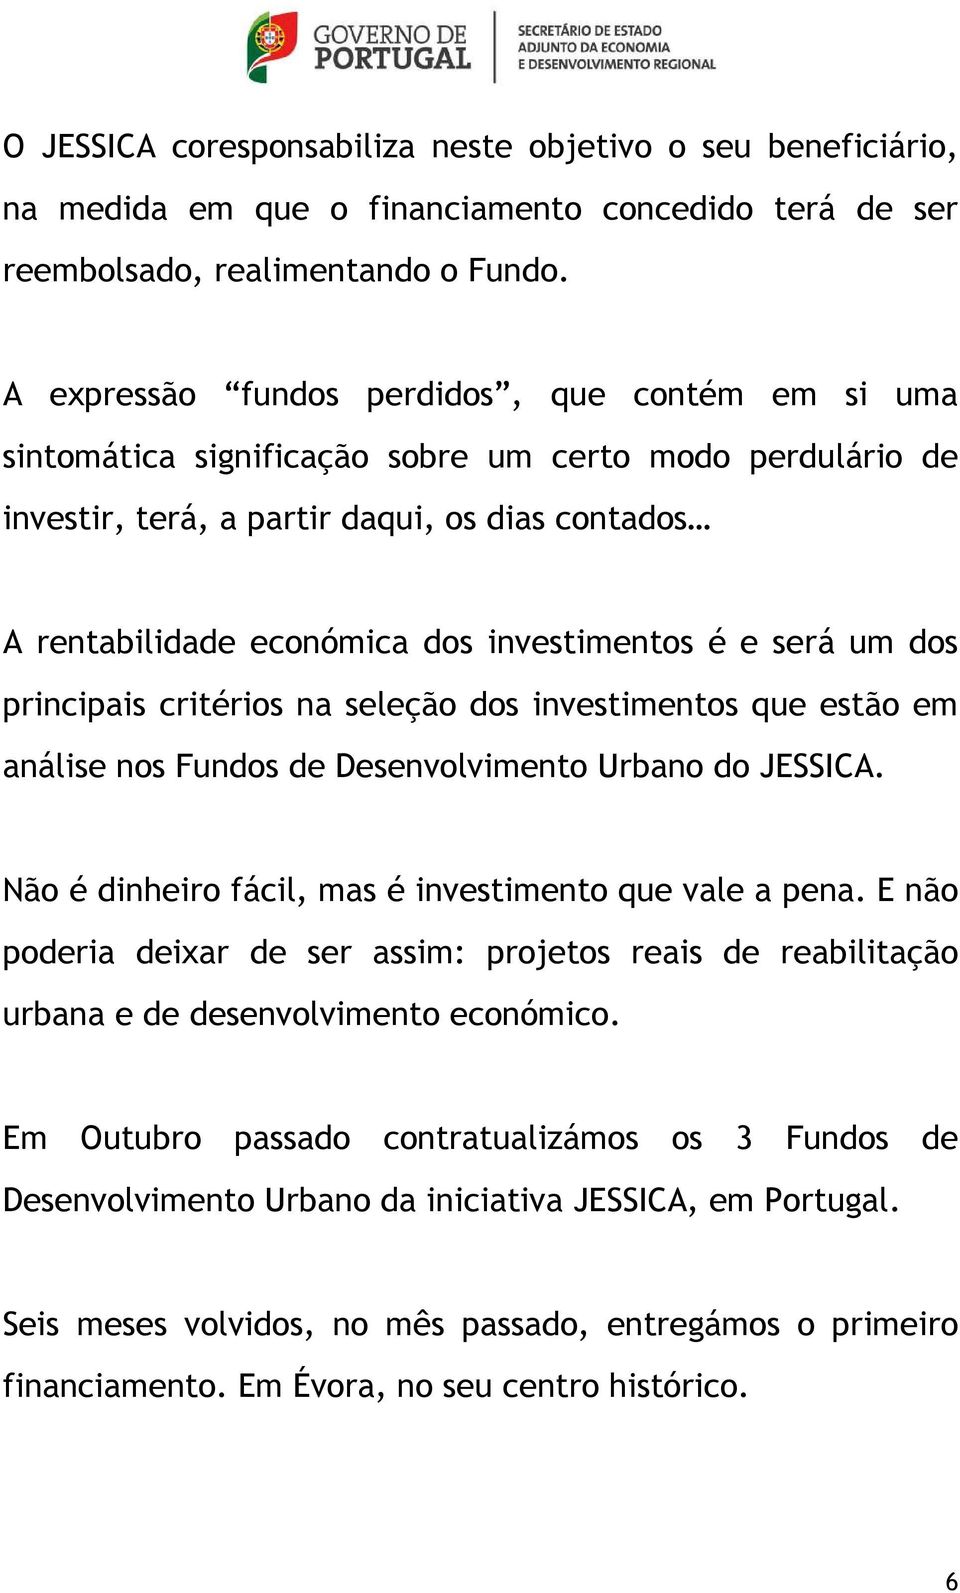 investimentos é e será um dos principais critérios na seleção dos investimentos que estão em análise nos Fundos de Desenvolvimento Urbano do JESSICA.